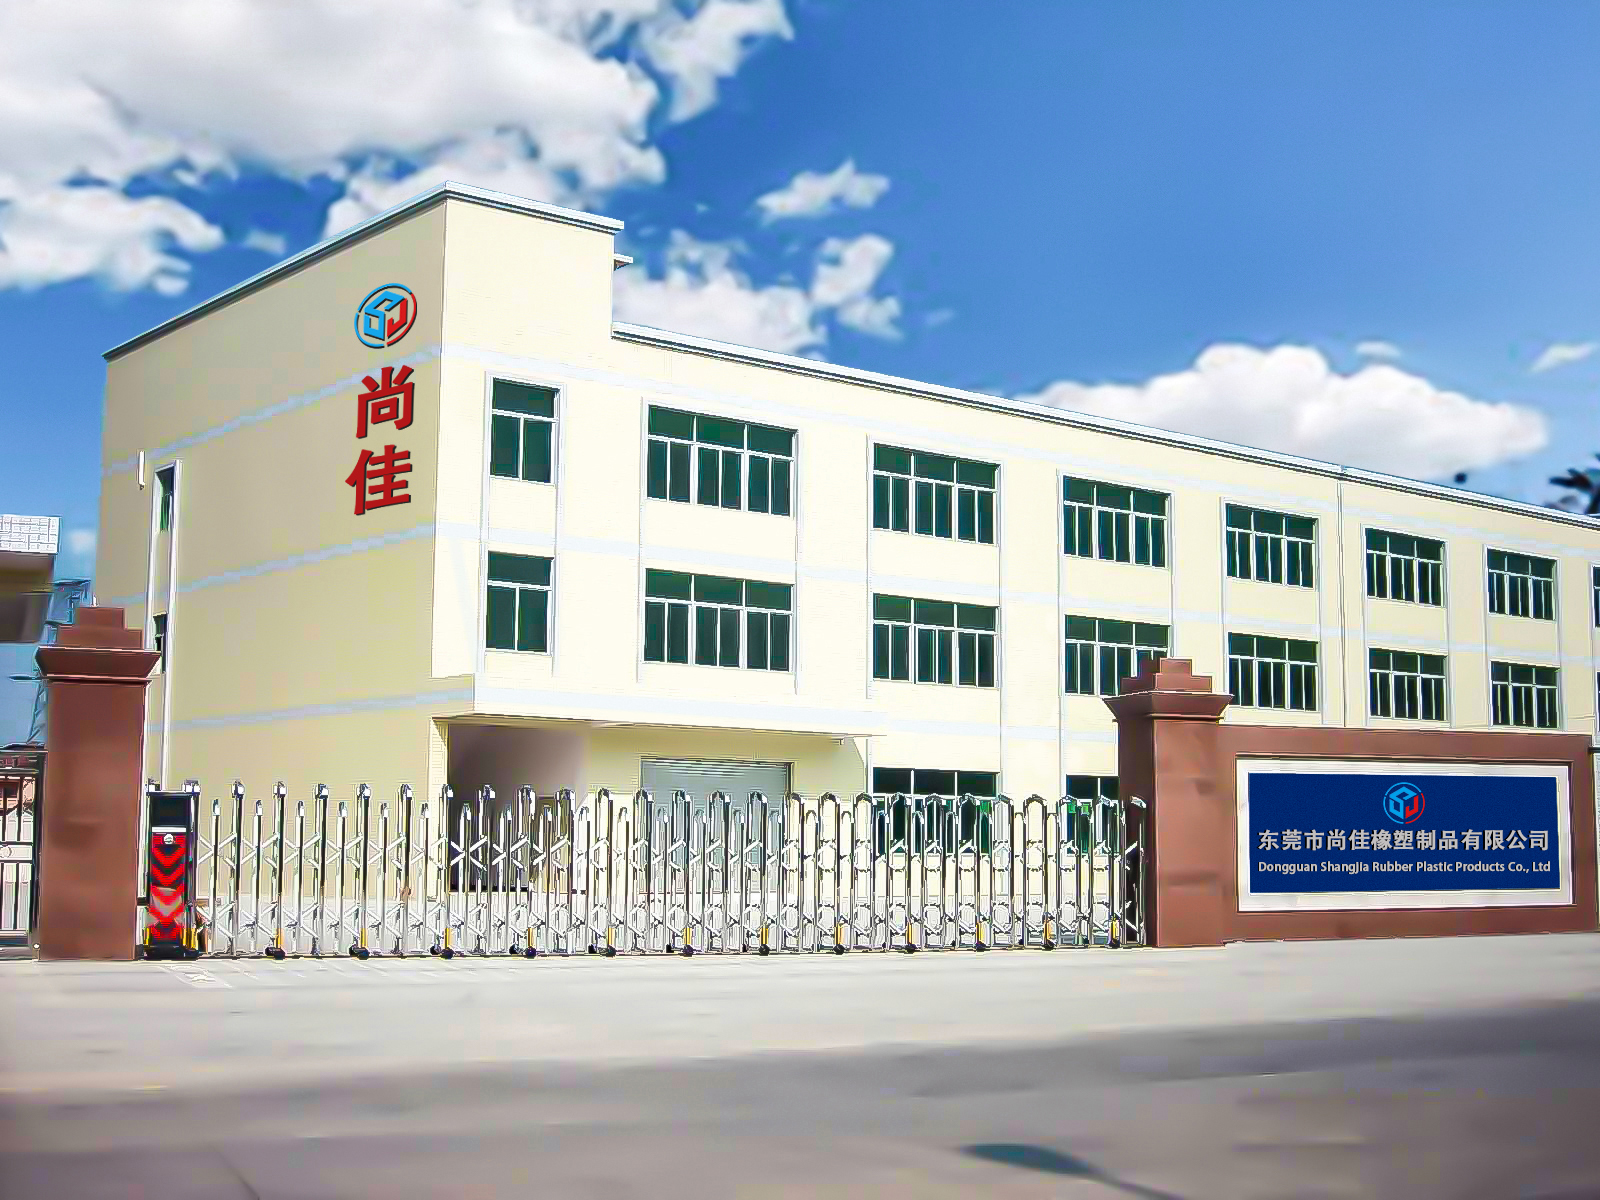 Дунгуань Шанцзя — предпочтительная фабрика по изготовлению нестандартных коротких держателей